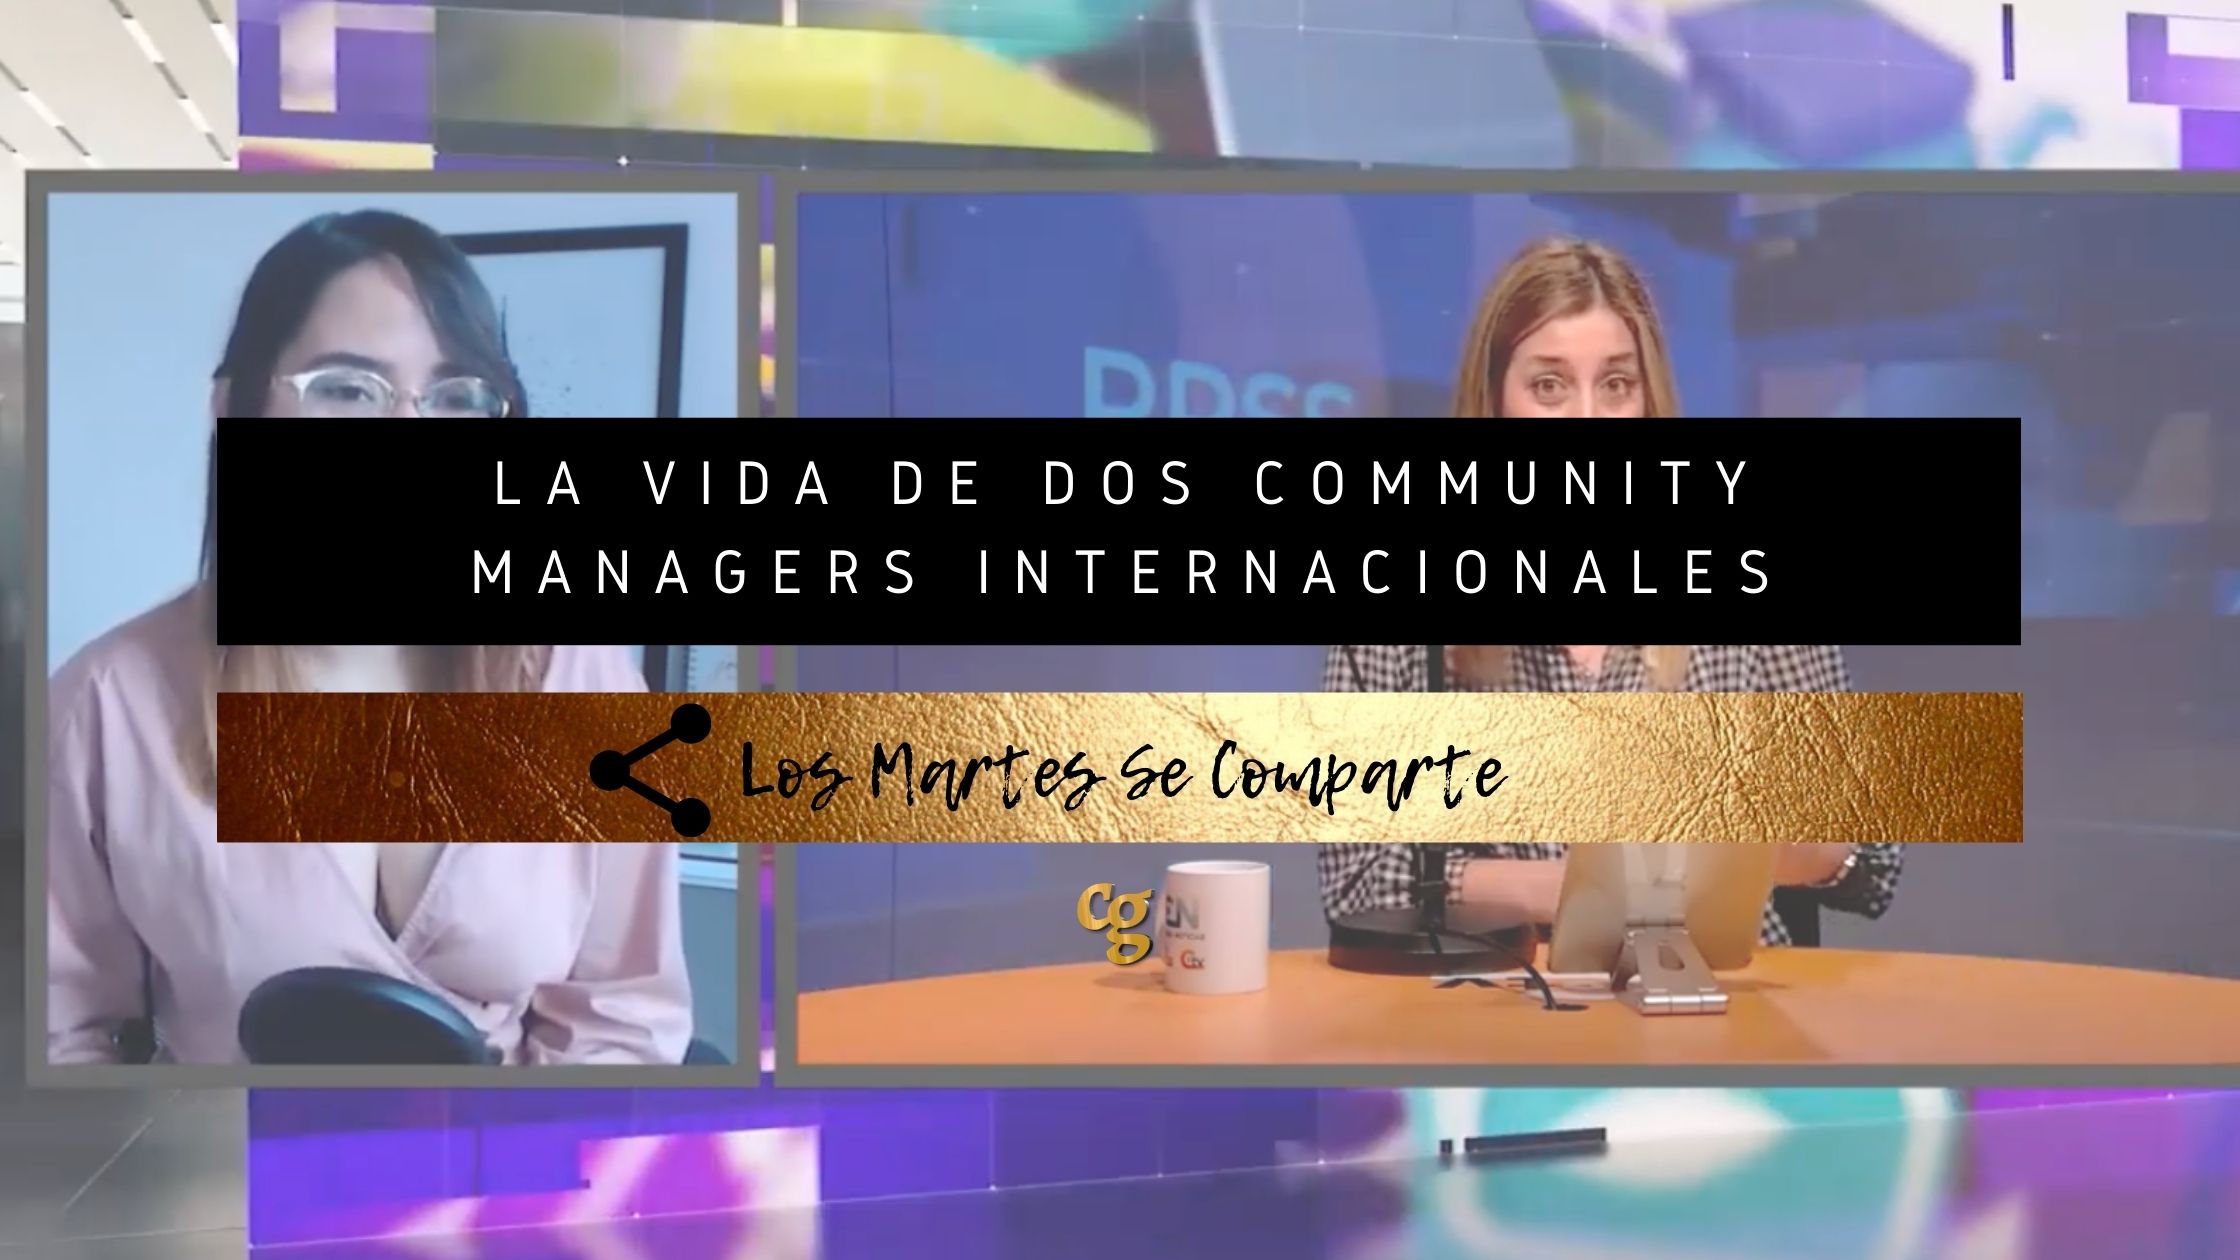 LA VIDA DE DOS COMMUNITY MANAGERS INTERNACIONALES